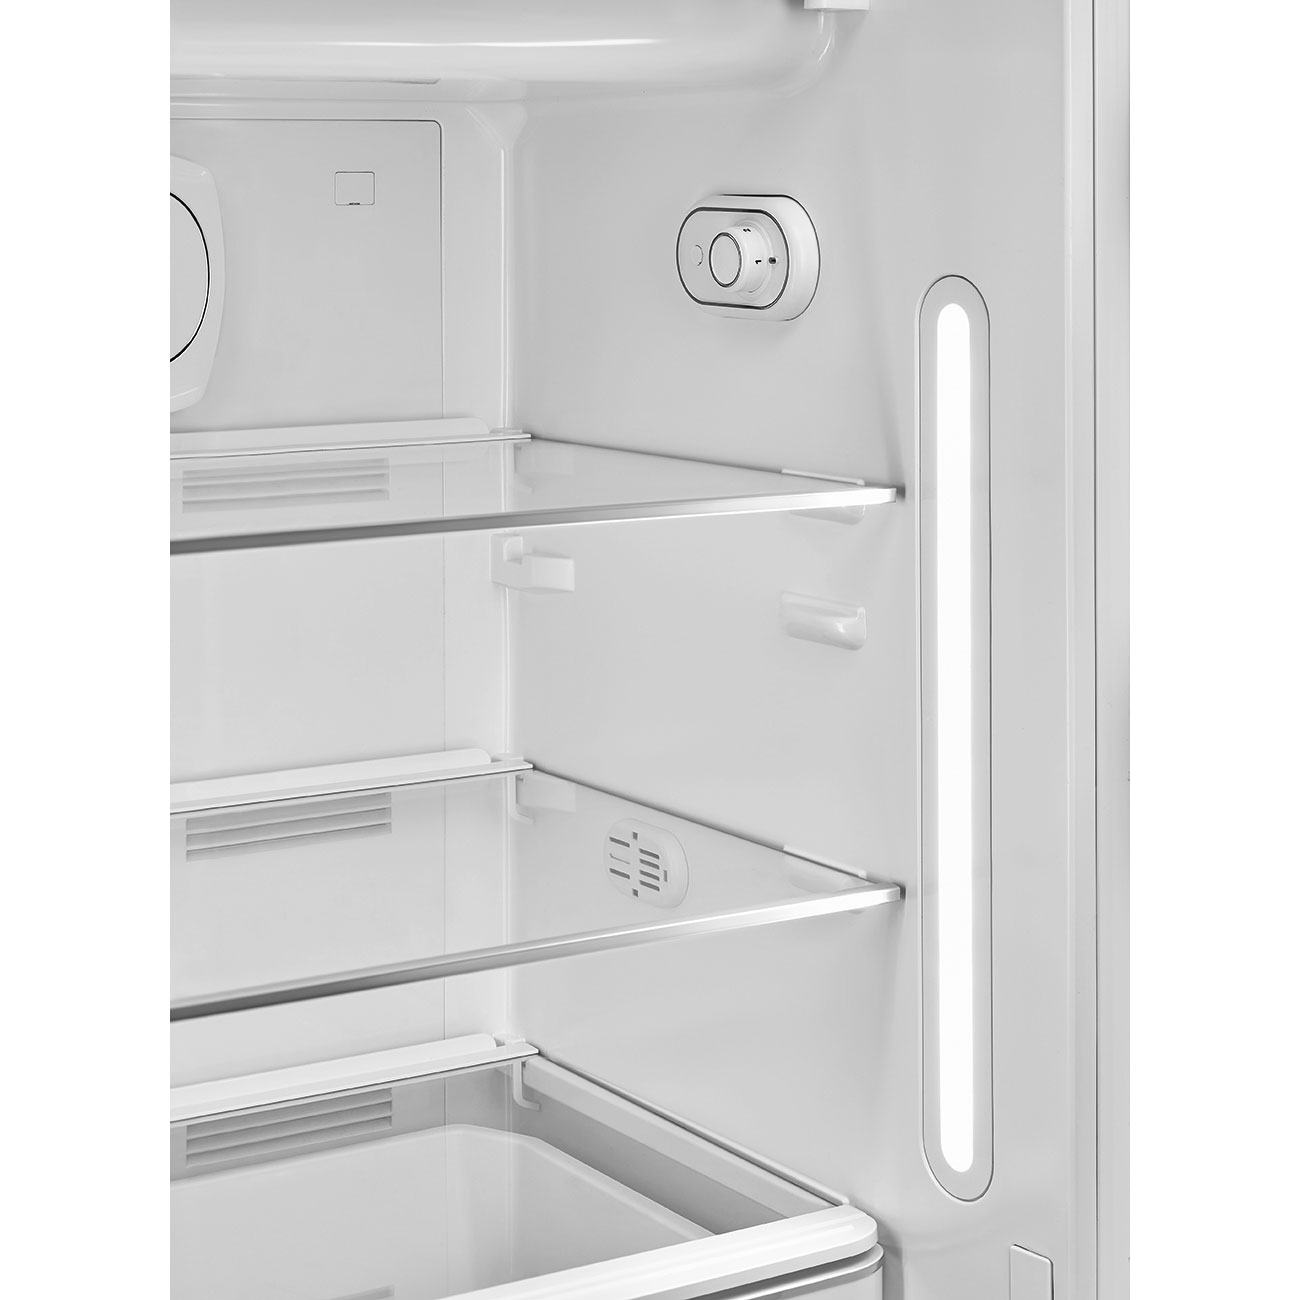 Taupe refrigerator - Smeg_6